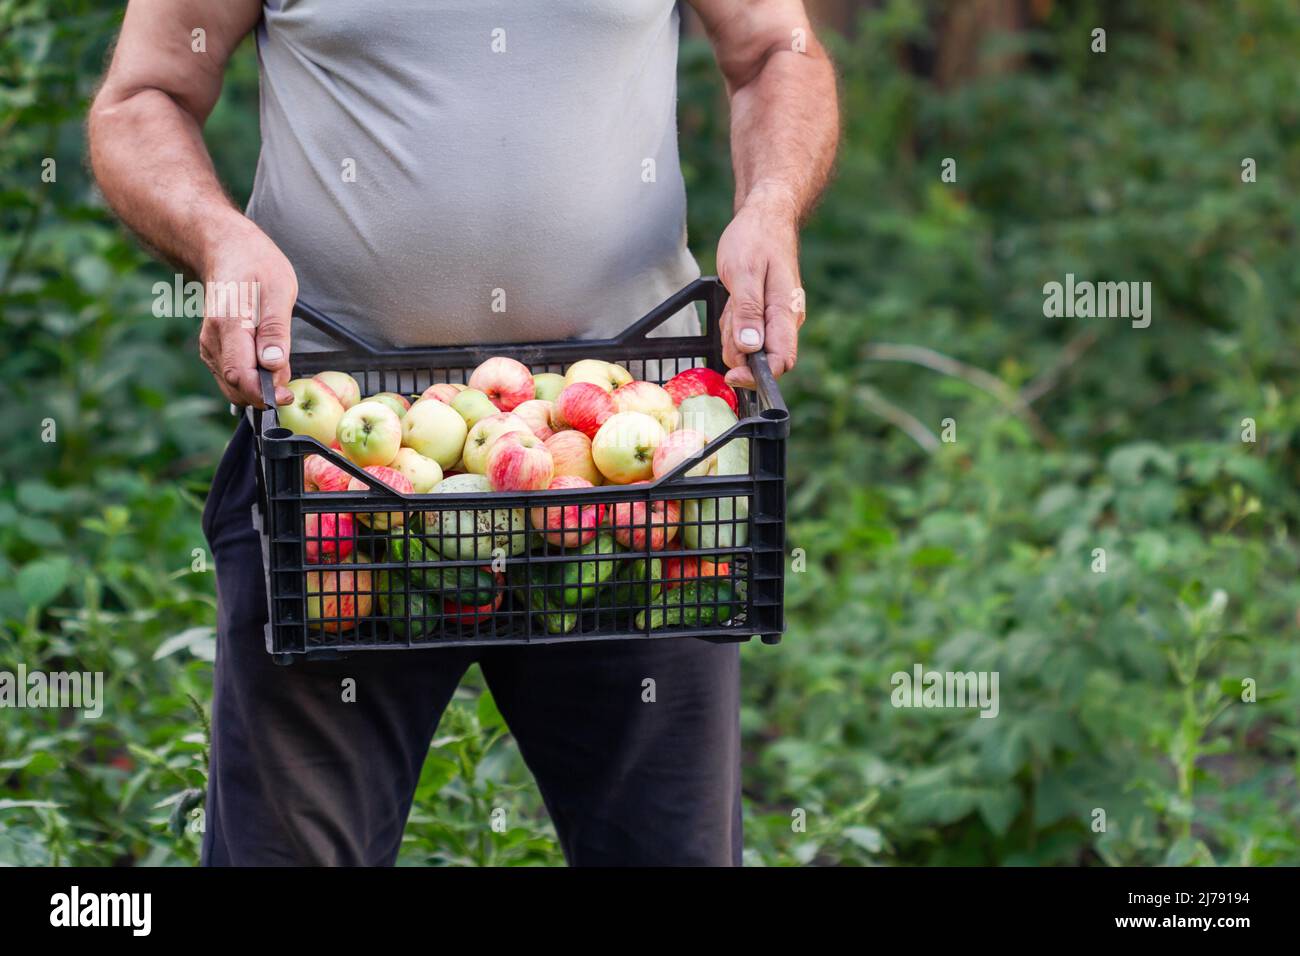 Un contadino raccoglieva il raccolto in giardino. Un uomo d'estate conserva una scatola di plastica con mele, cetrioli e zucchine sullo sfondo verde delle piante. Foto Stock